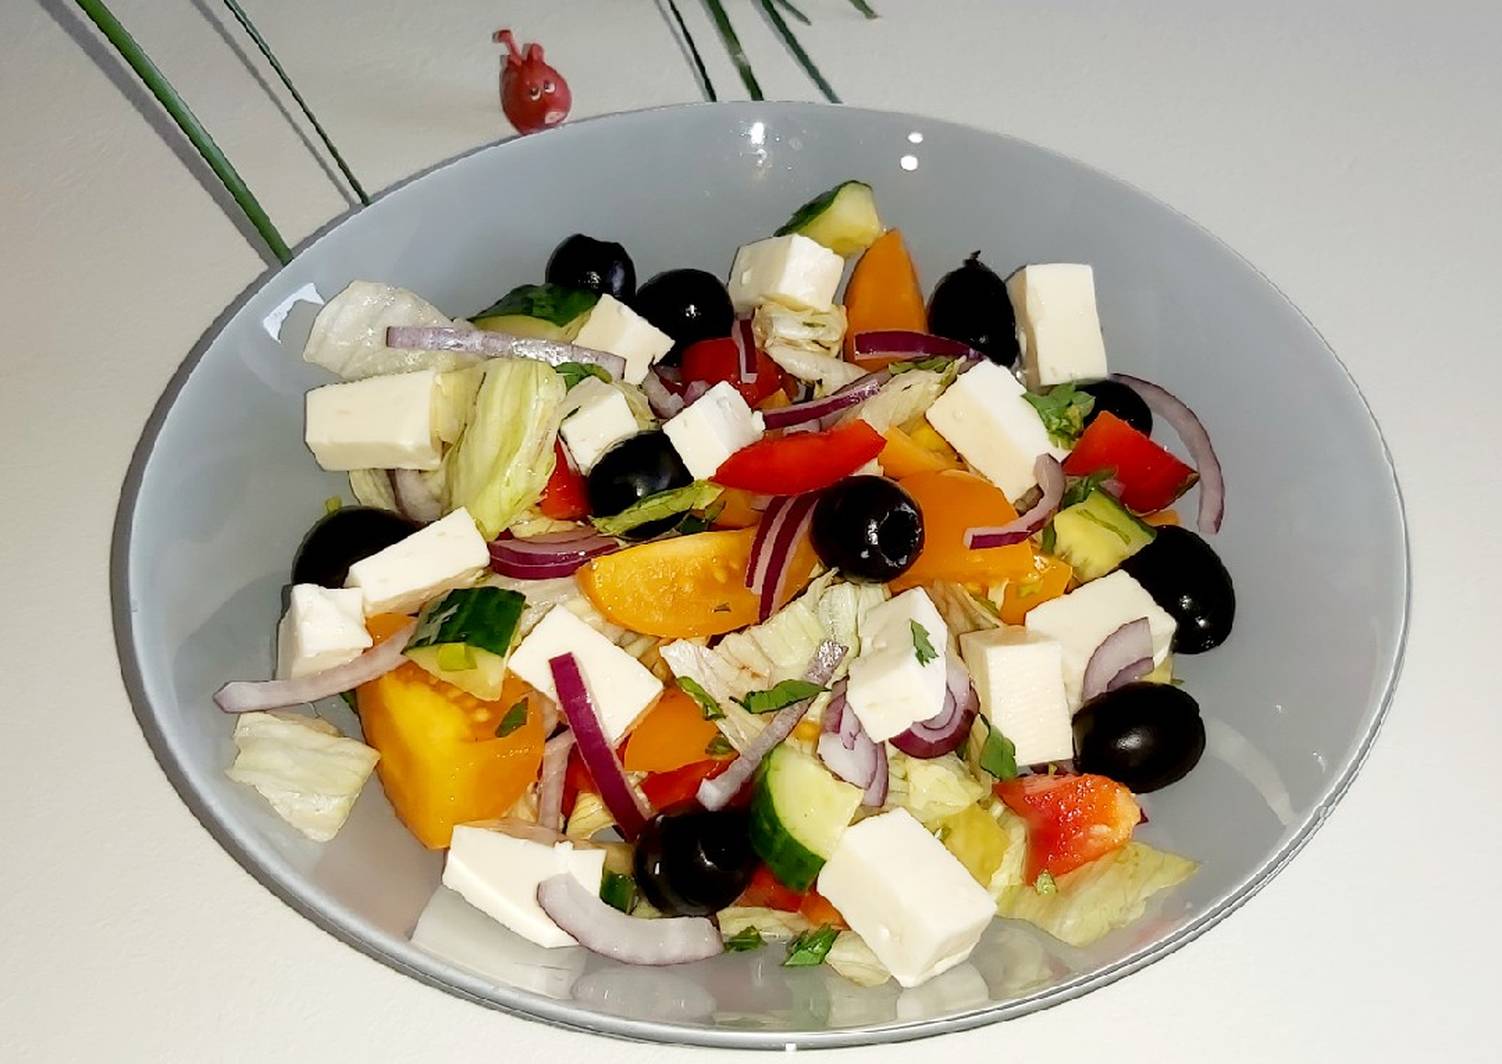 Настоящий греческий. Салат оливки помидоры сыр фетакса маслины. Сыр для греческого салата фетакса. Салат греческий классический с фетаксой. Греческий салат с сыром фетакса.